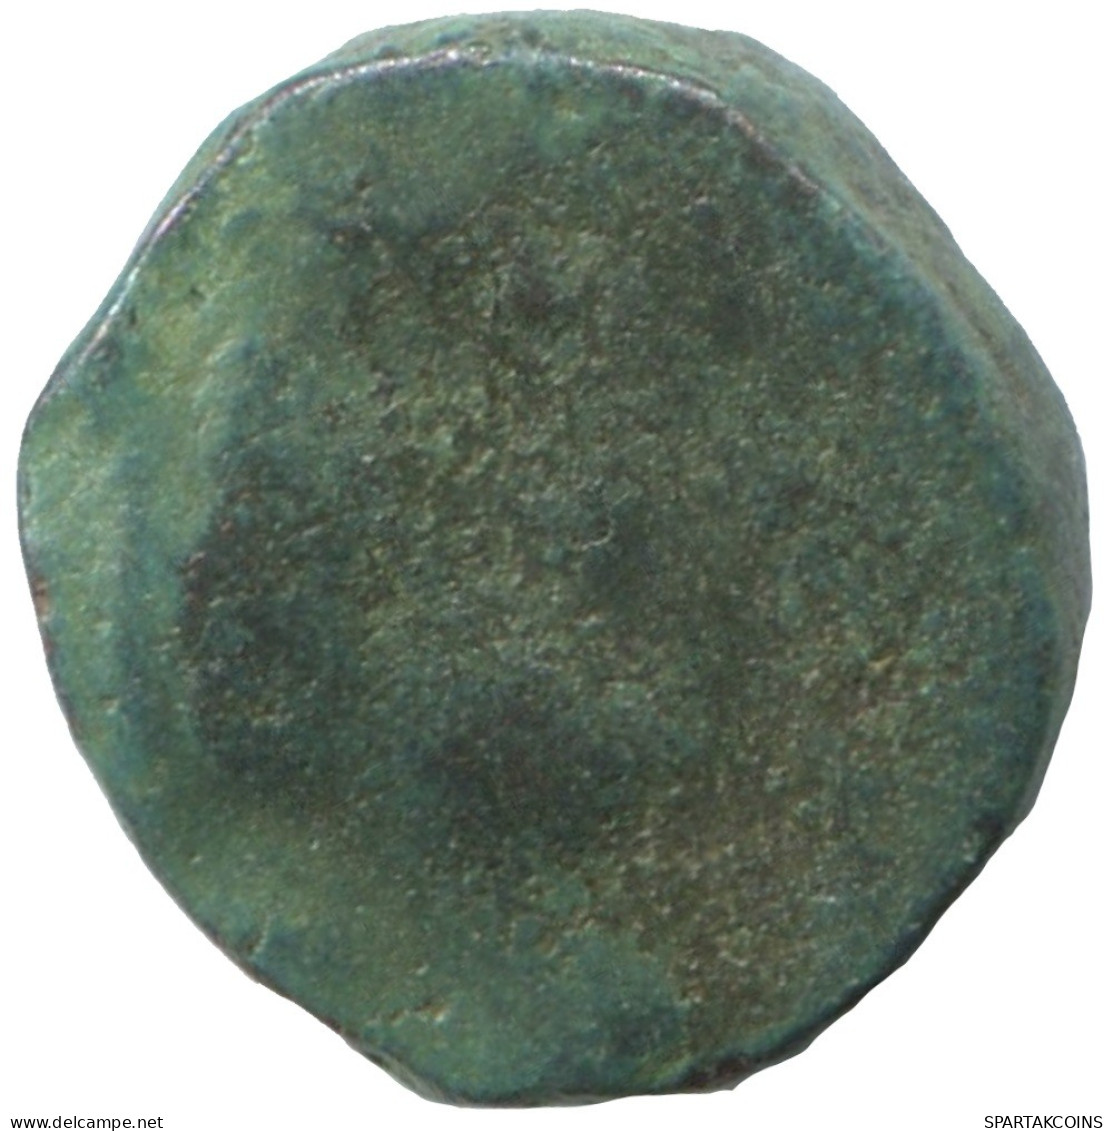 Ancient Authentic GREEK Coin 1.5g/11mm #SAV1409.11.U.A - Griechische Münzen